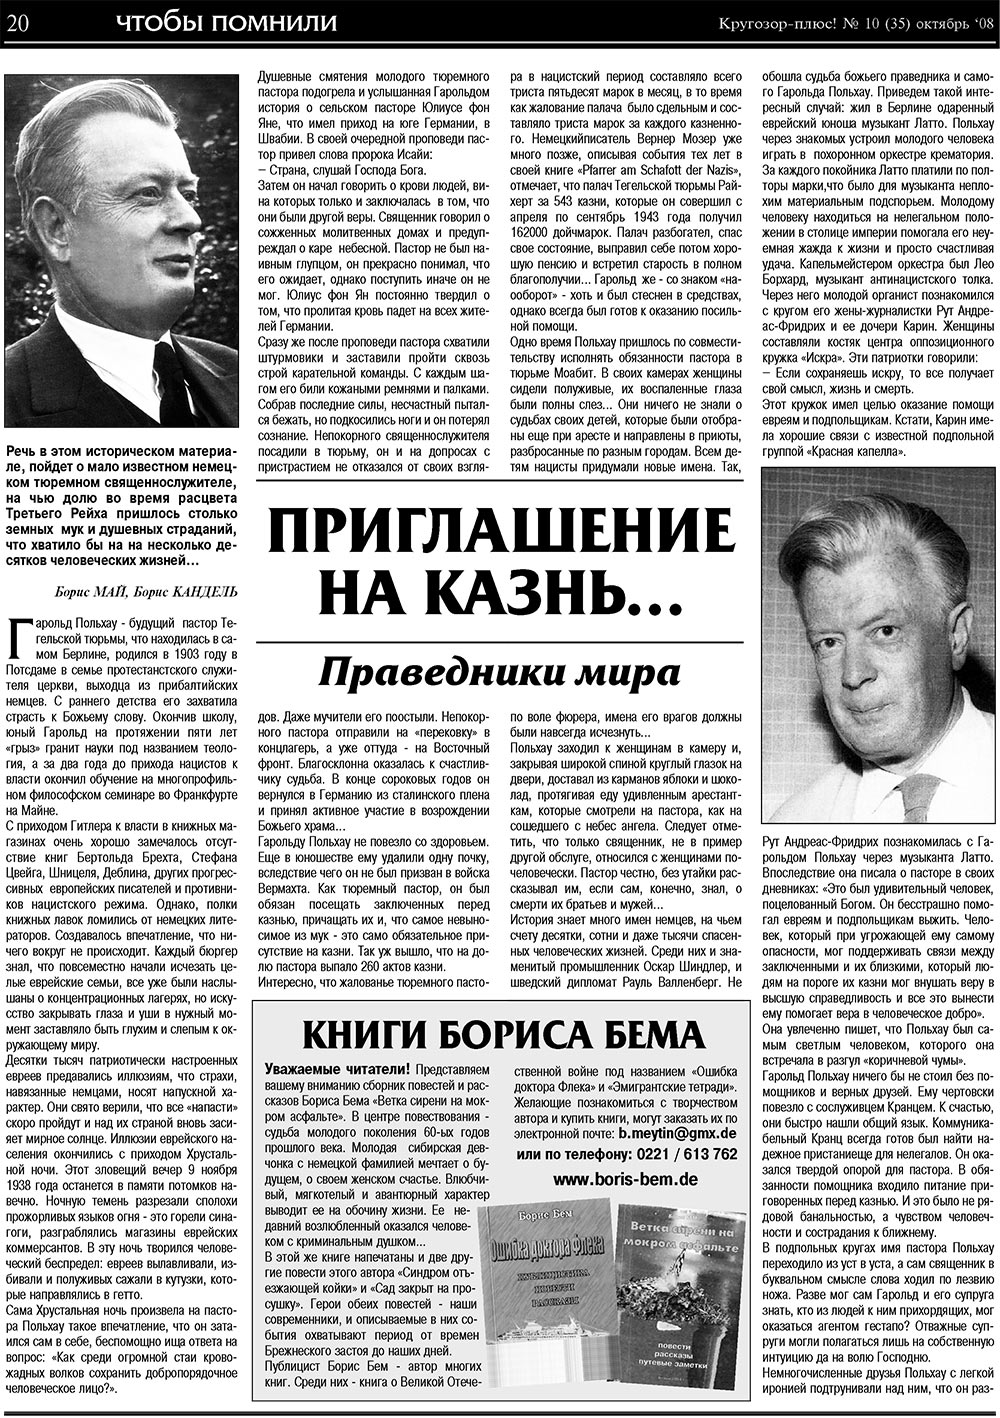 Кругозор плюс!, газета. 2008 №10 стр.20